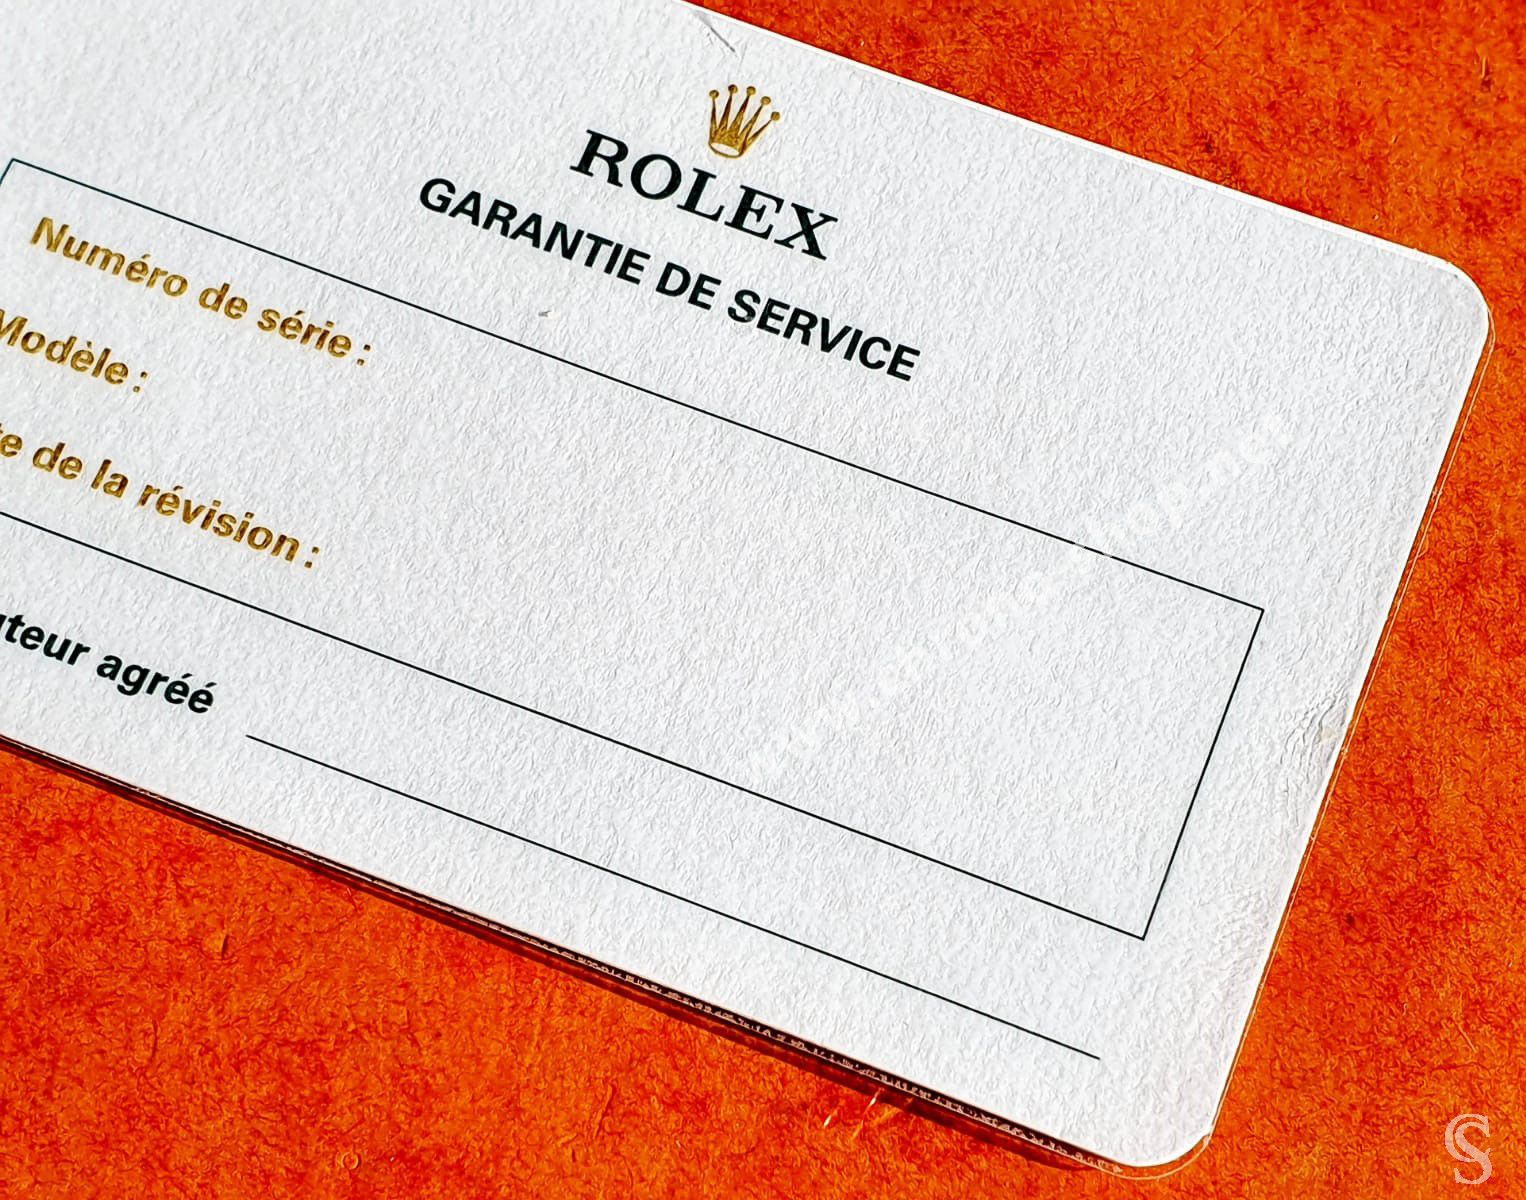 rolex card